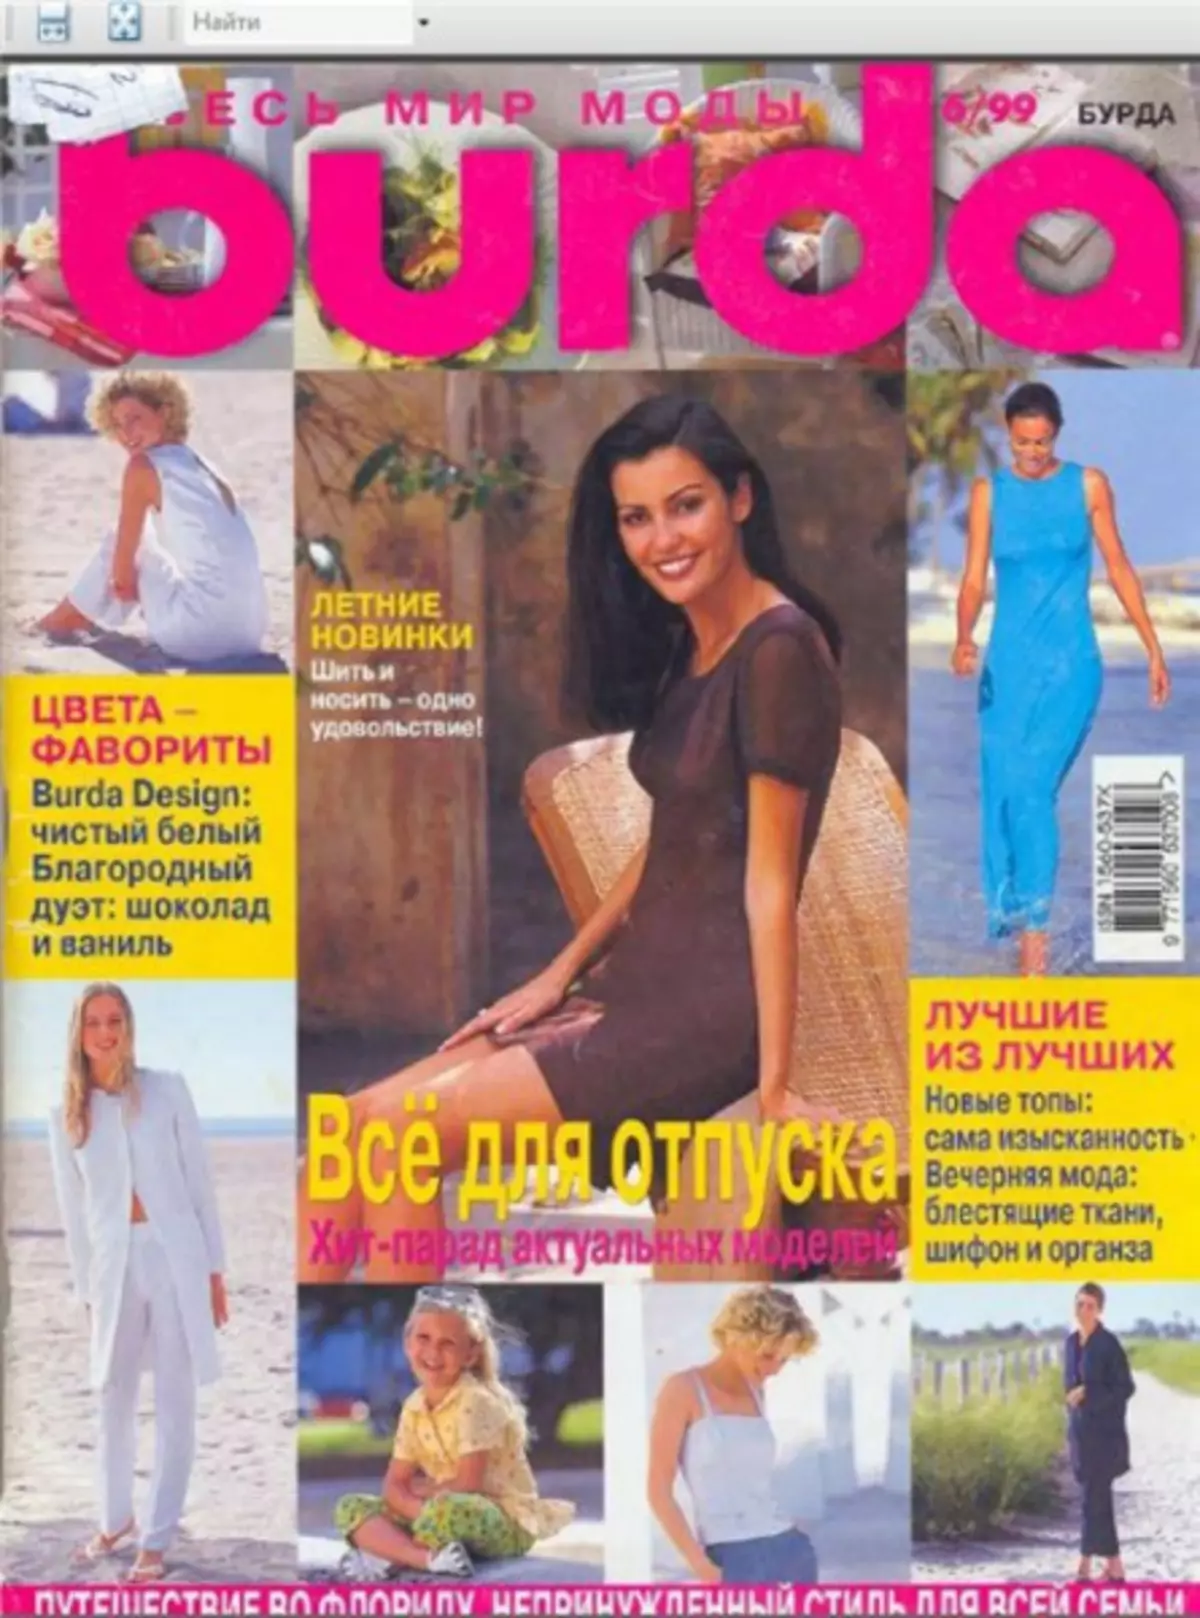 Qaababka joornaalka Burda - Archive ilaa 1990